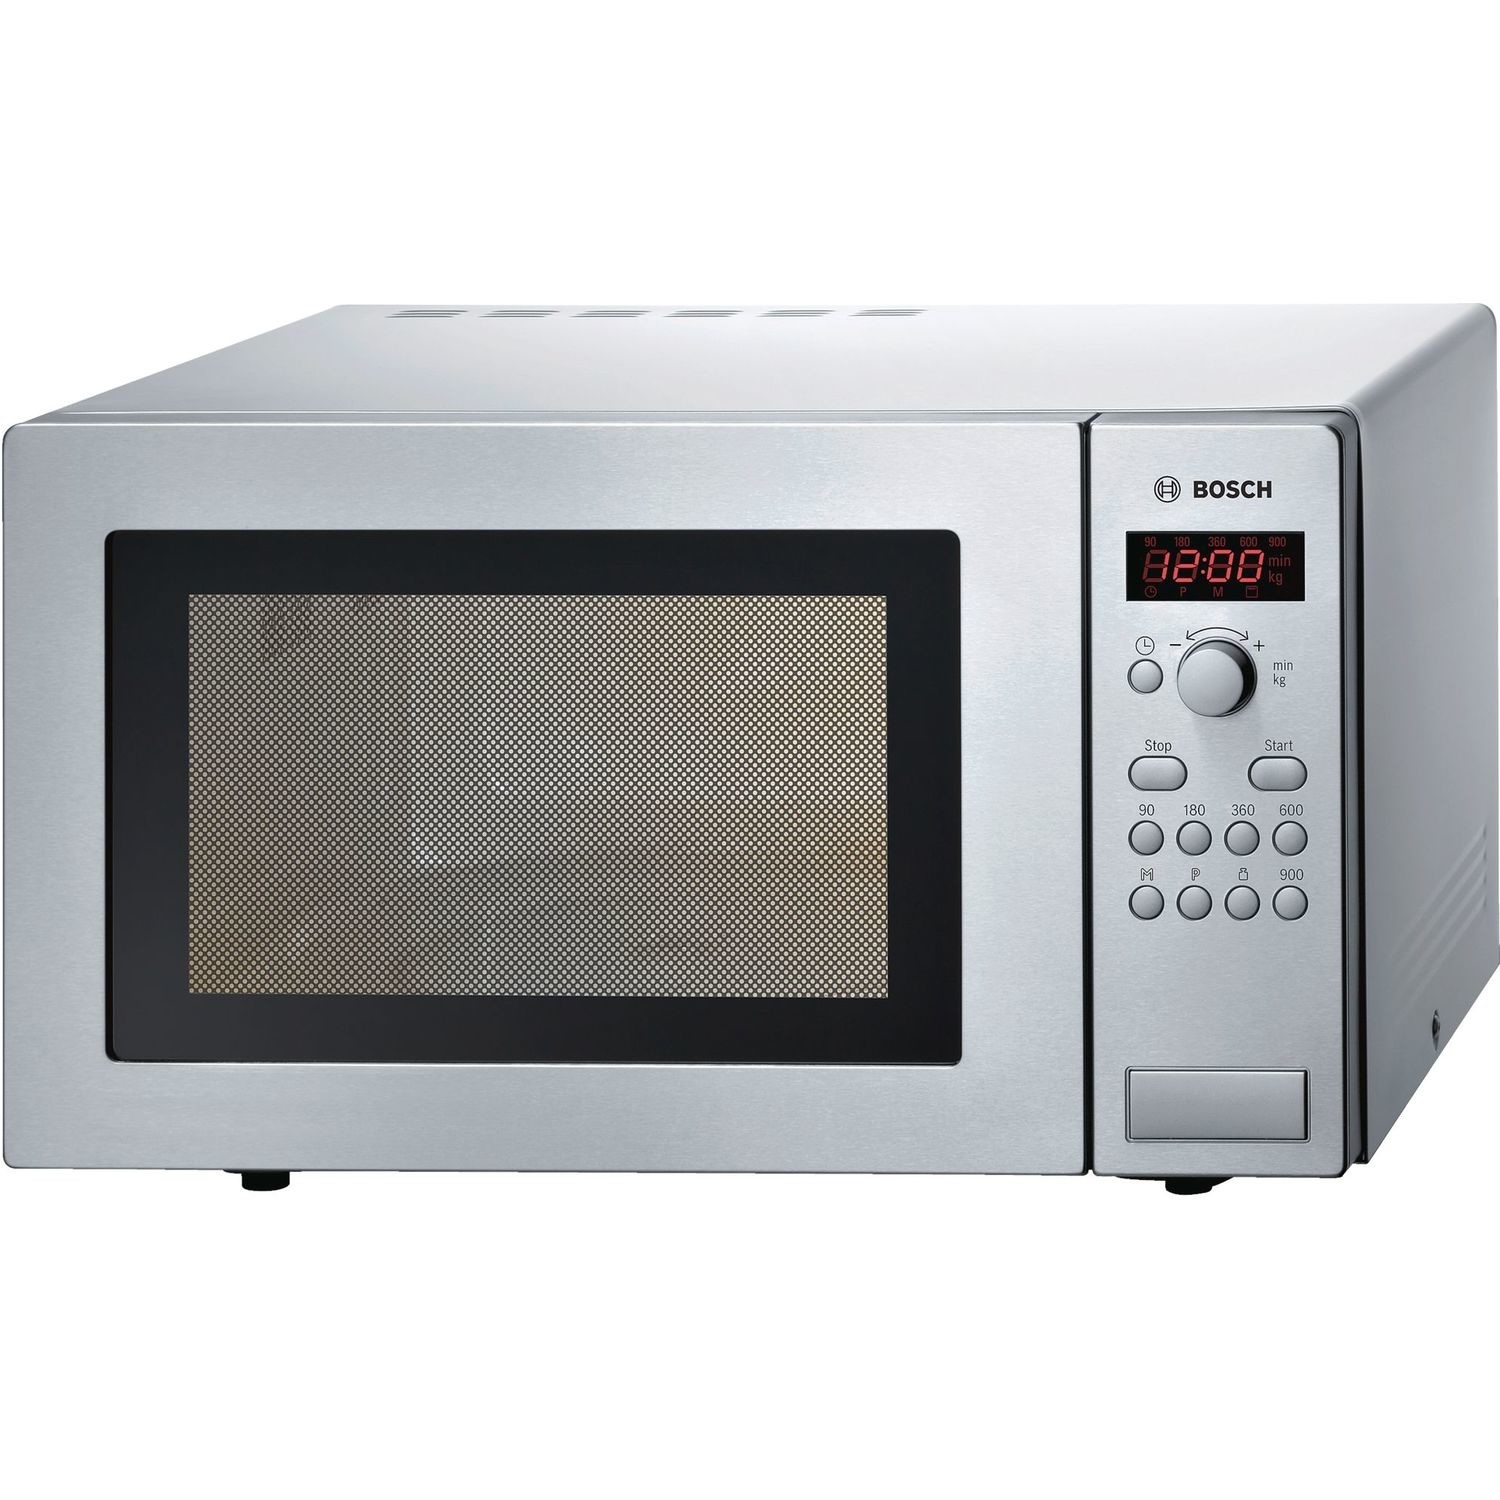 Bosch 25L Digital Microwave Oven - Brushed Steel